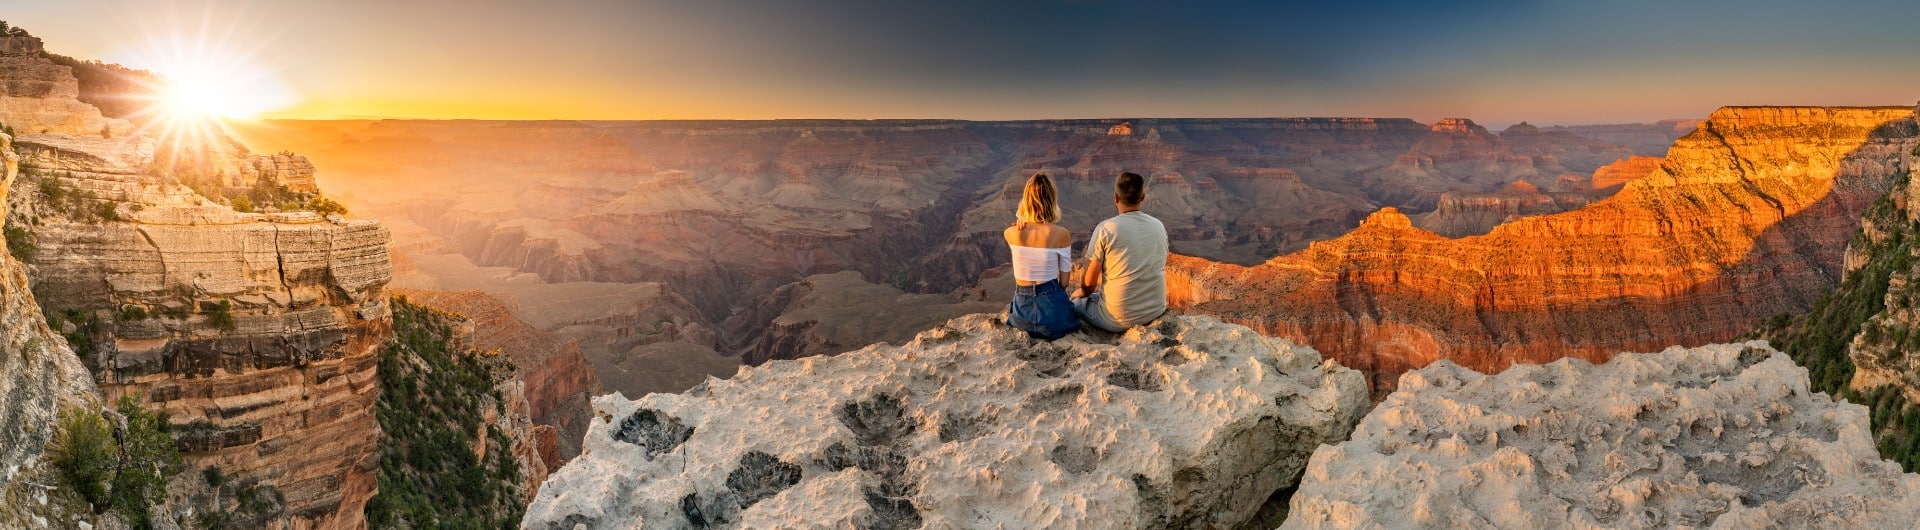 Od świtu do zmierzchu: Sedona - kraina czerwonych skał w Arizonie - wyjazd dla par